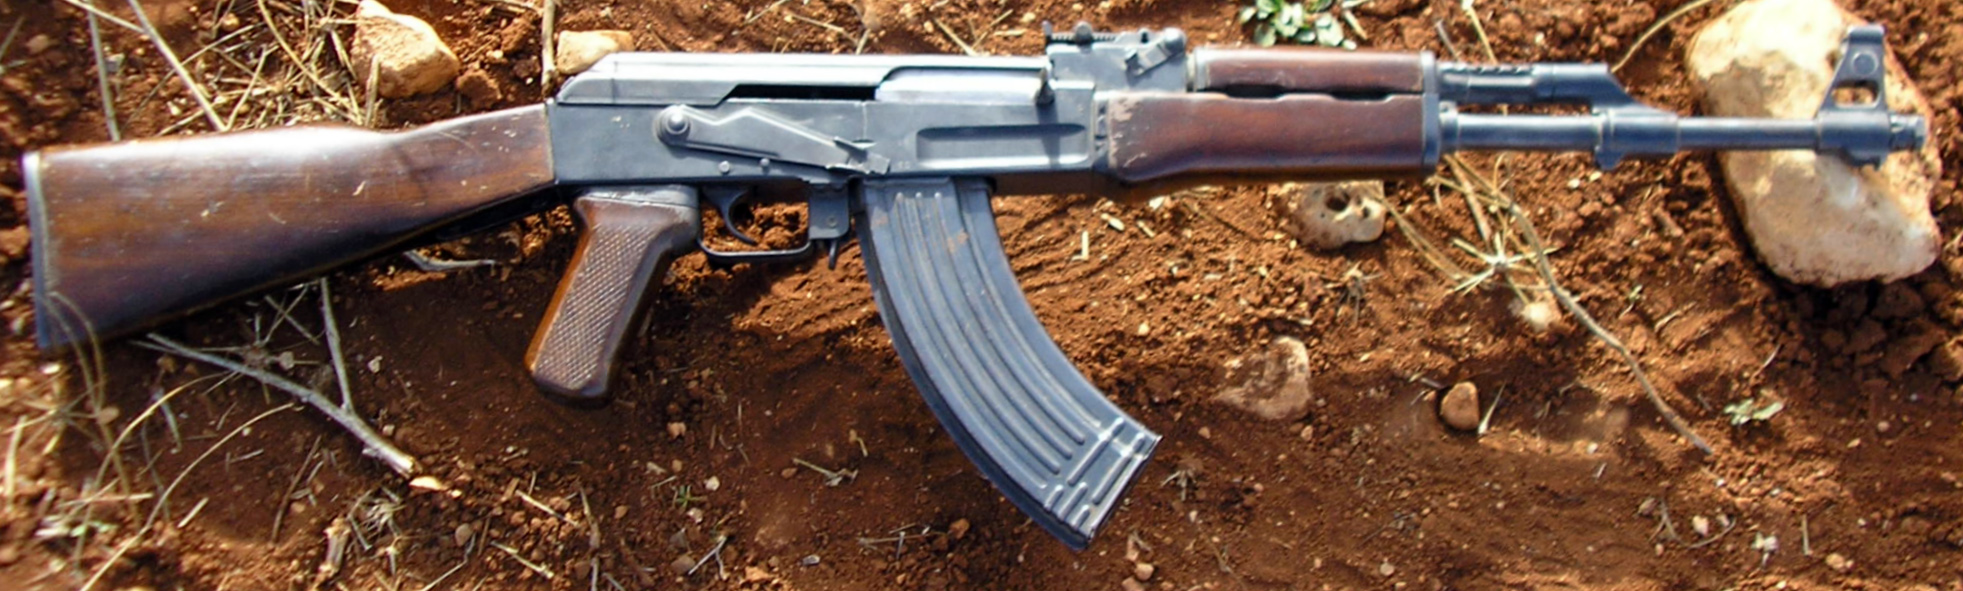 AK_47.JPG